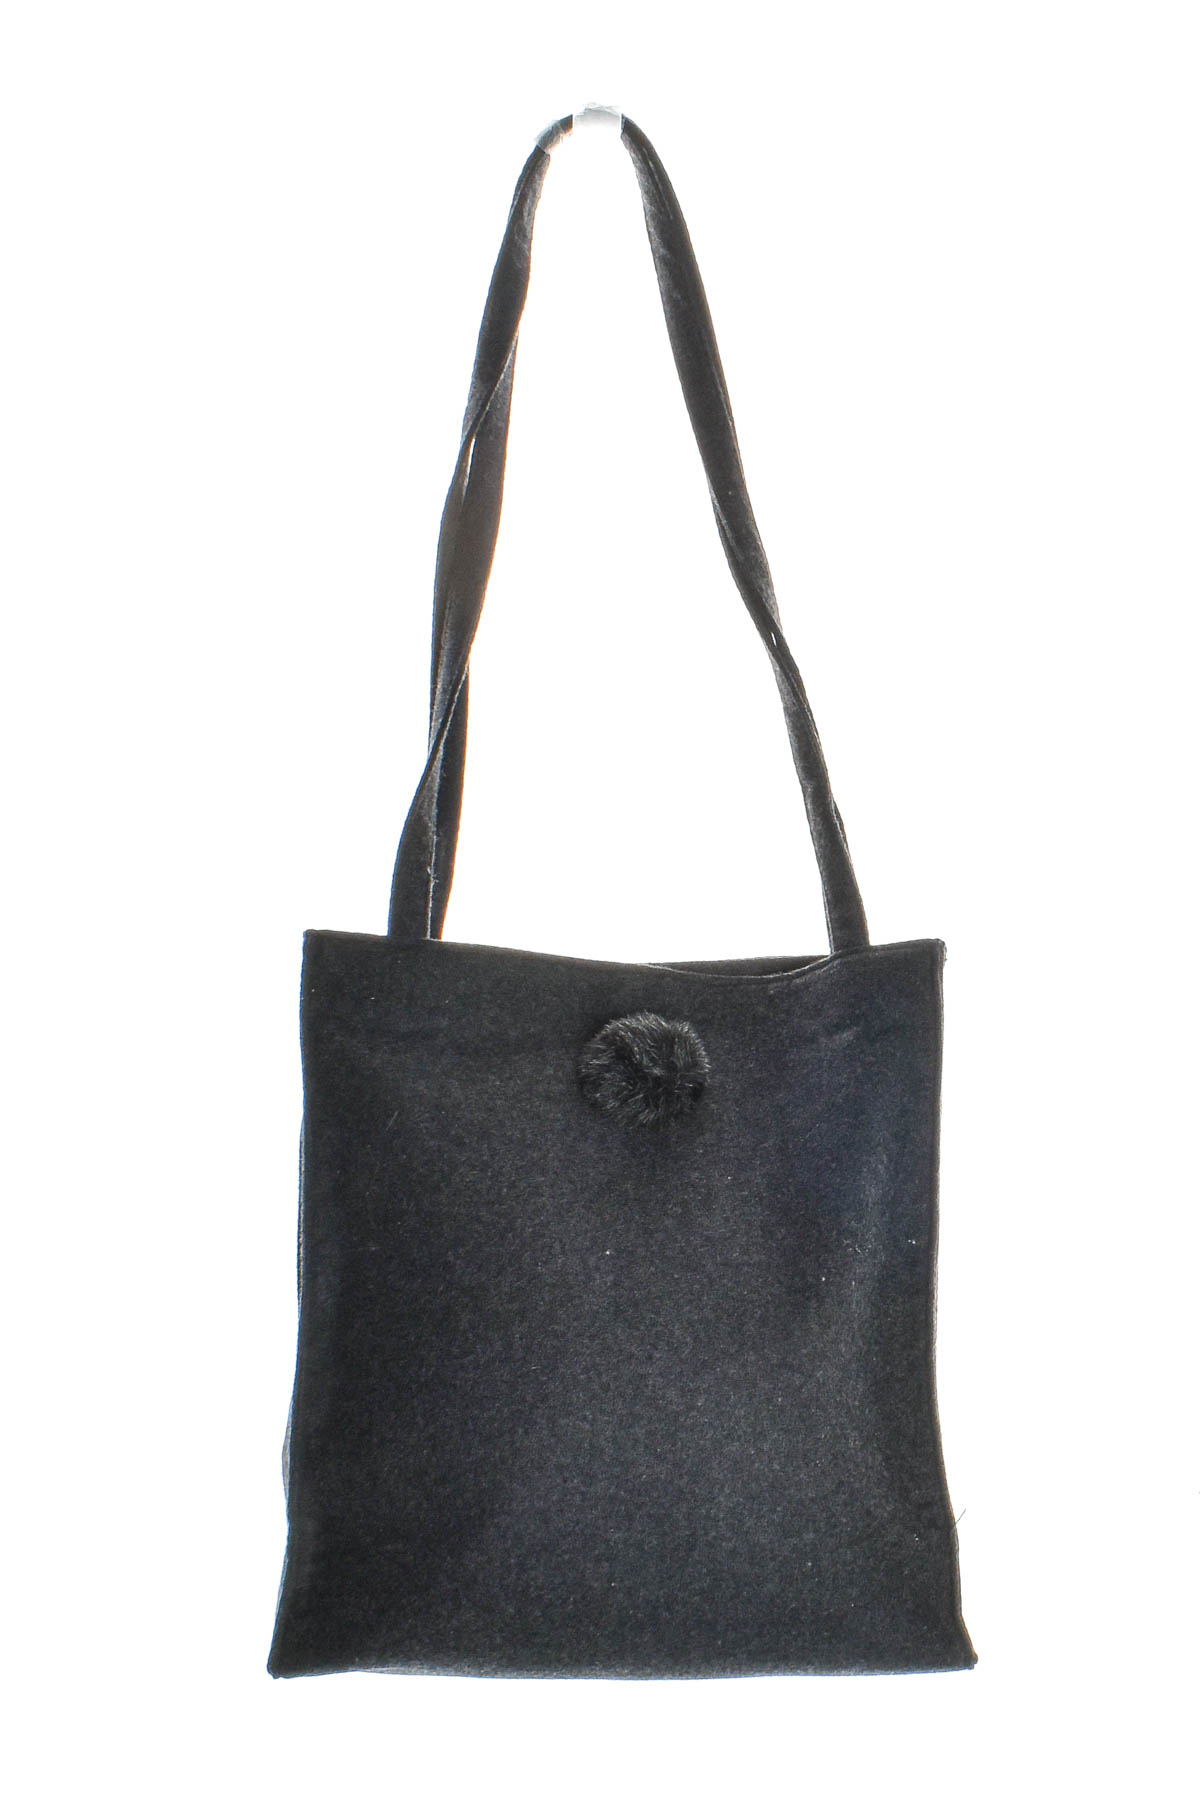 Women's bag - Fashions - 0